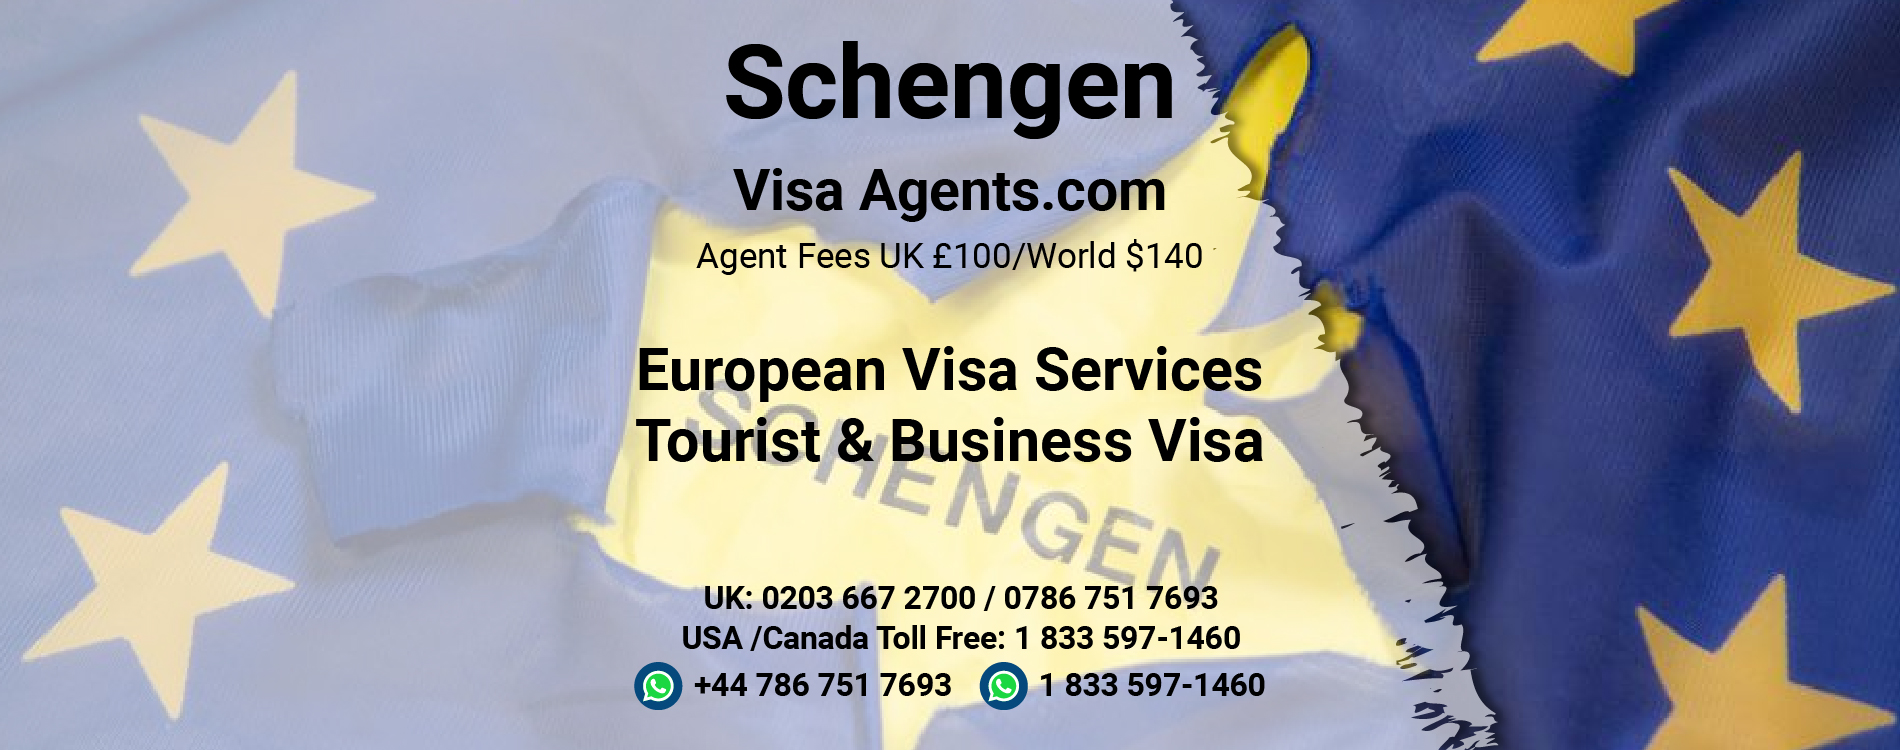 schengen tourist visa agents